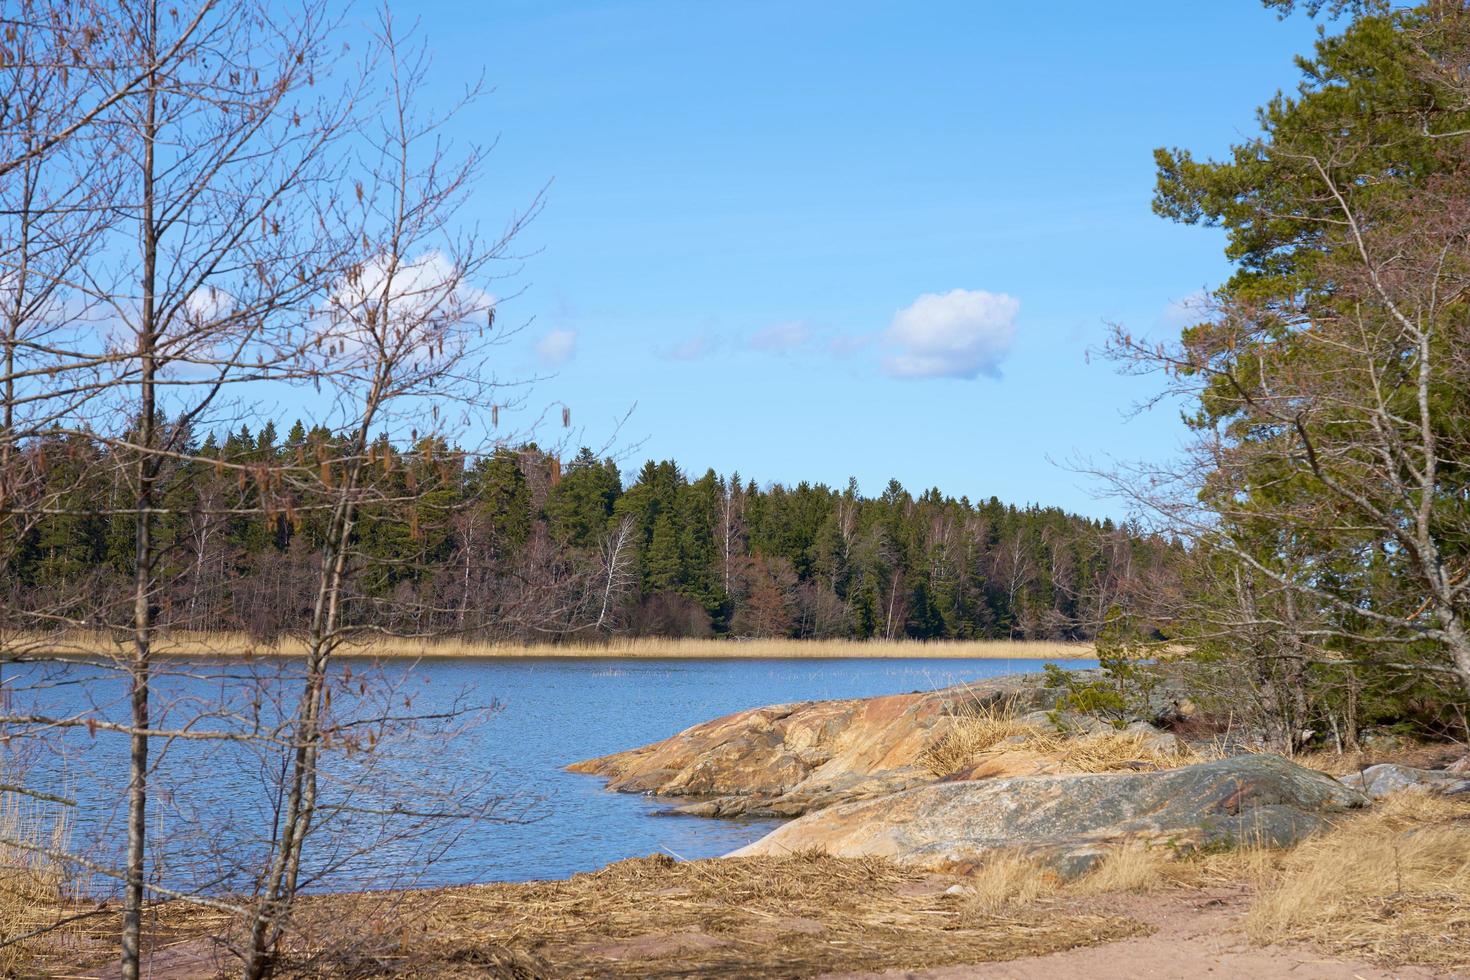 die Ostseeküste in Finnland im Frühjahr an einem sonnigen Tag. foto